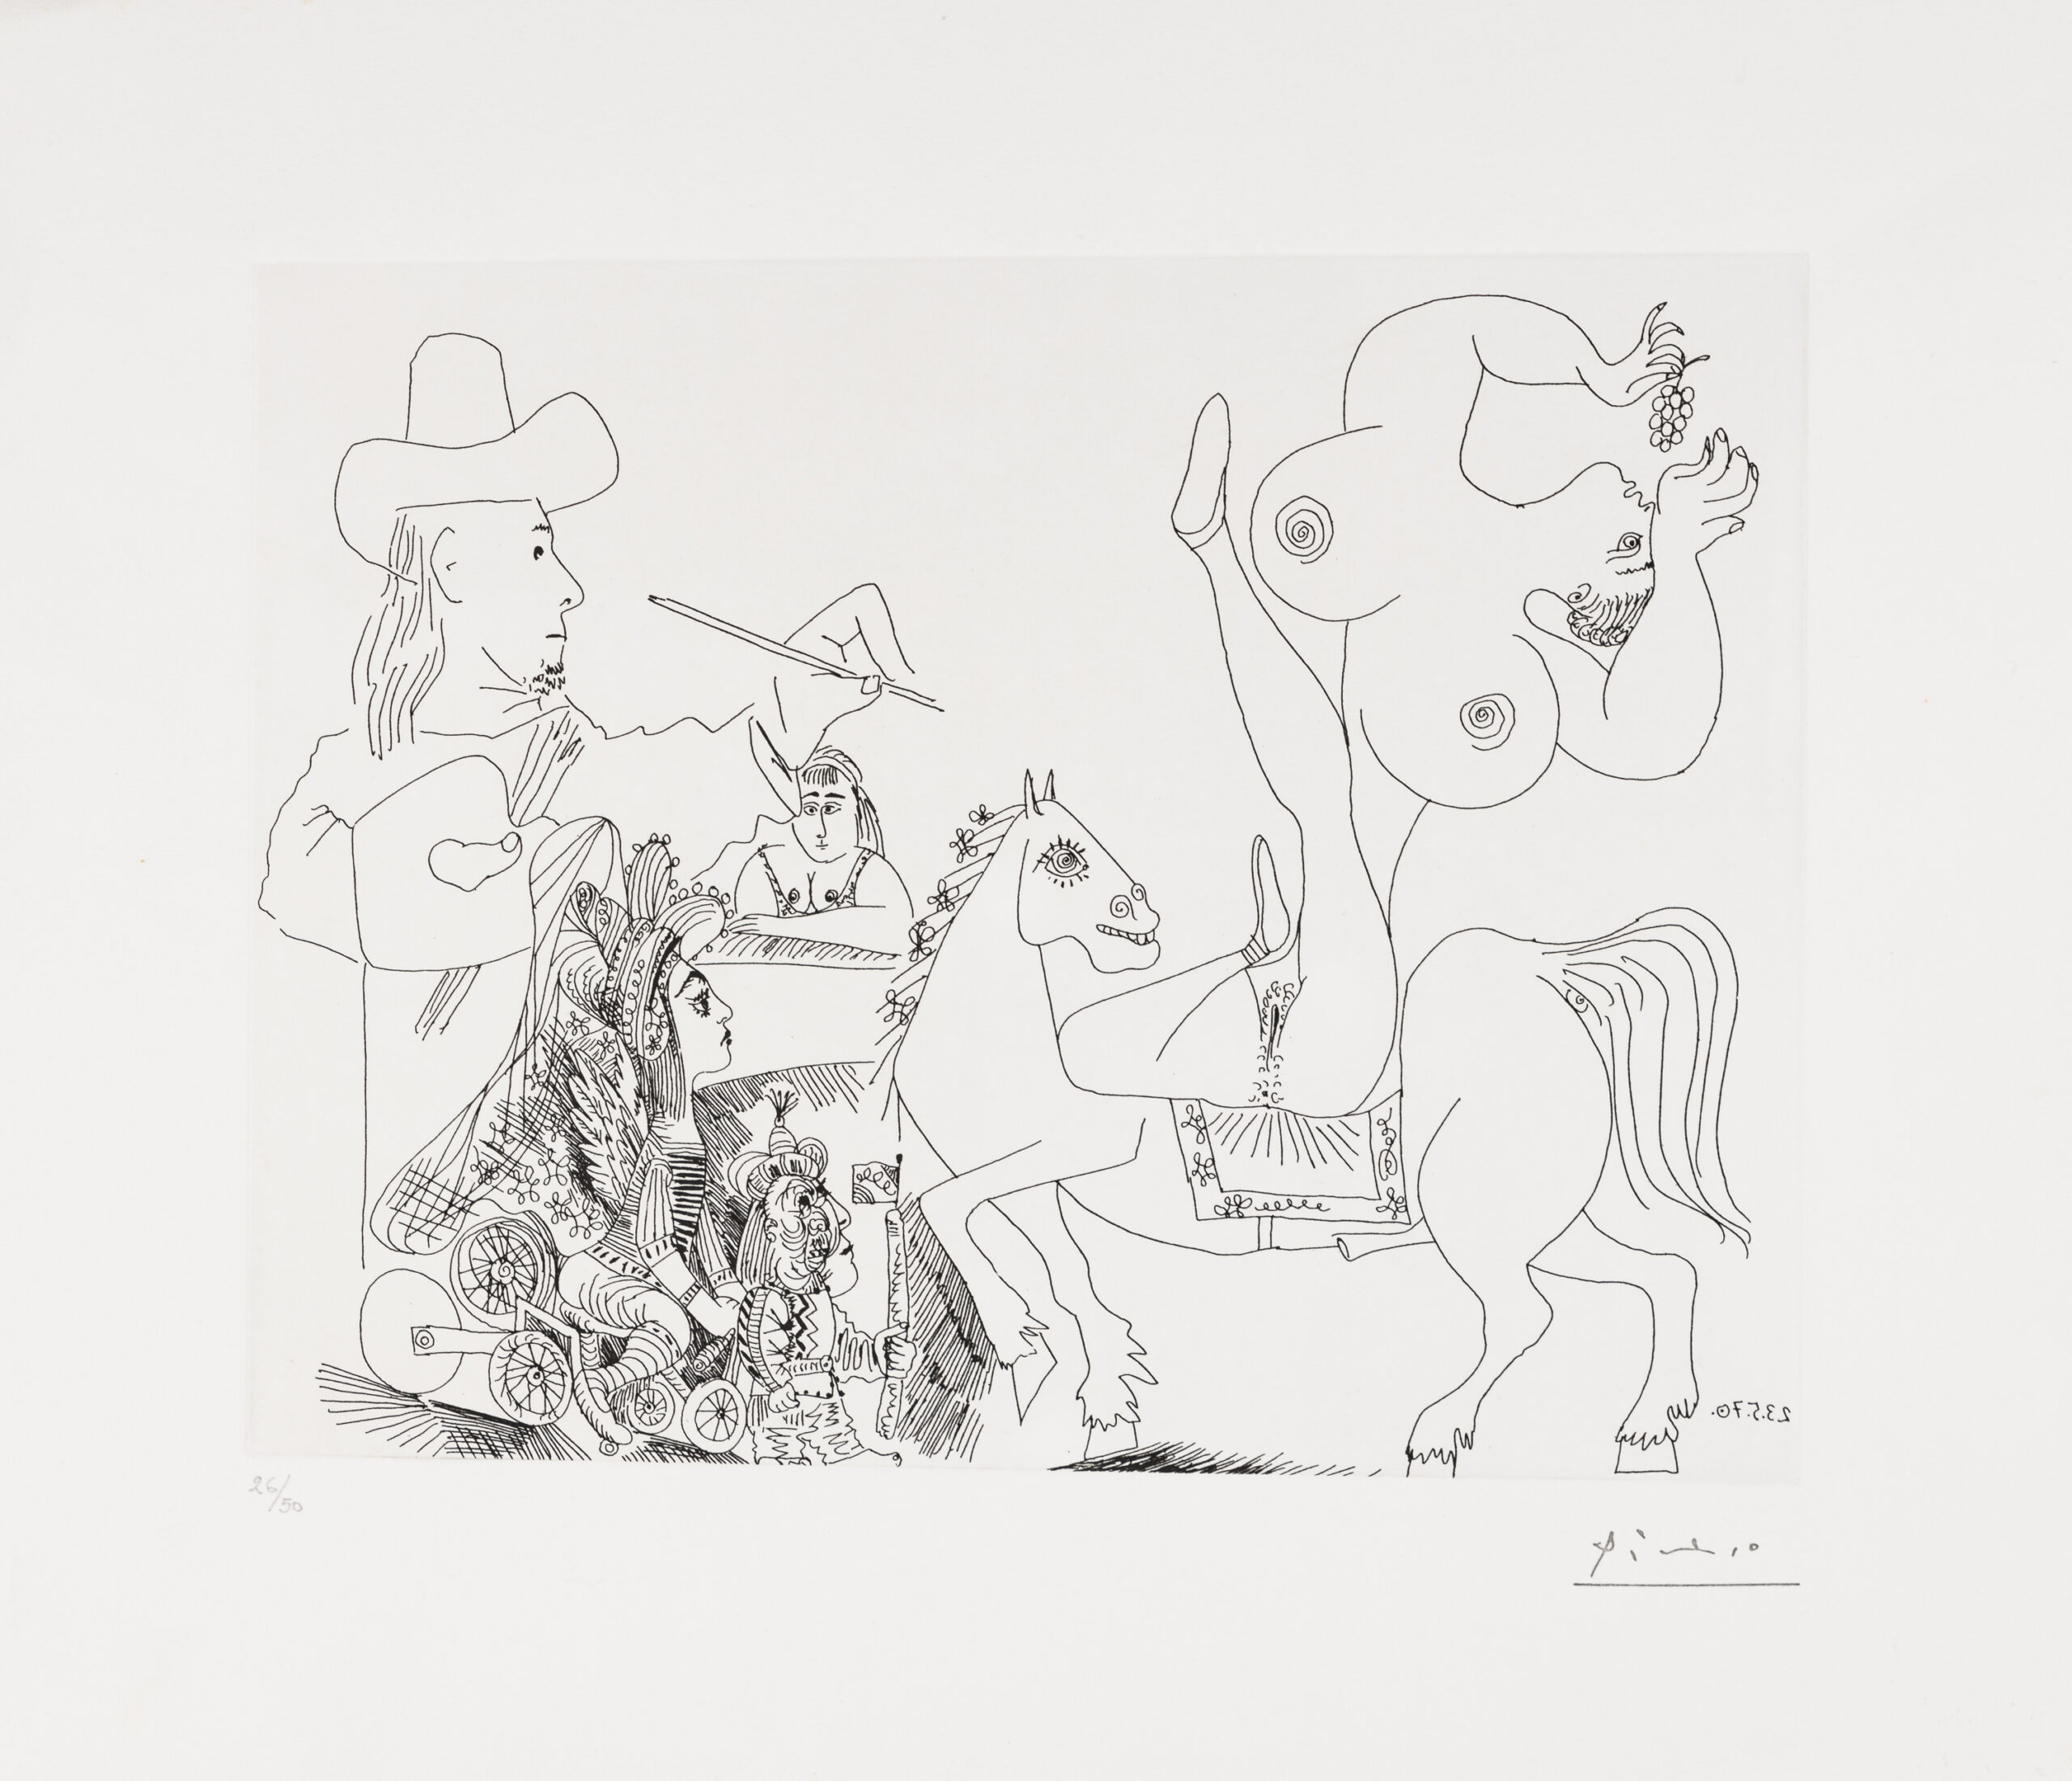 Pablo Picasso-Le Peintre au cirque, 23.5.70